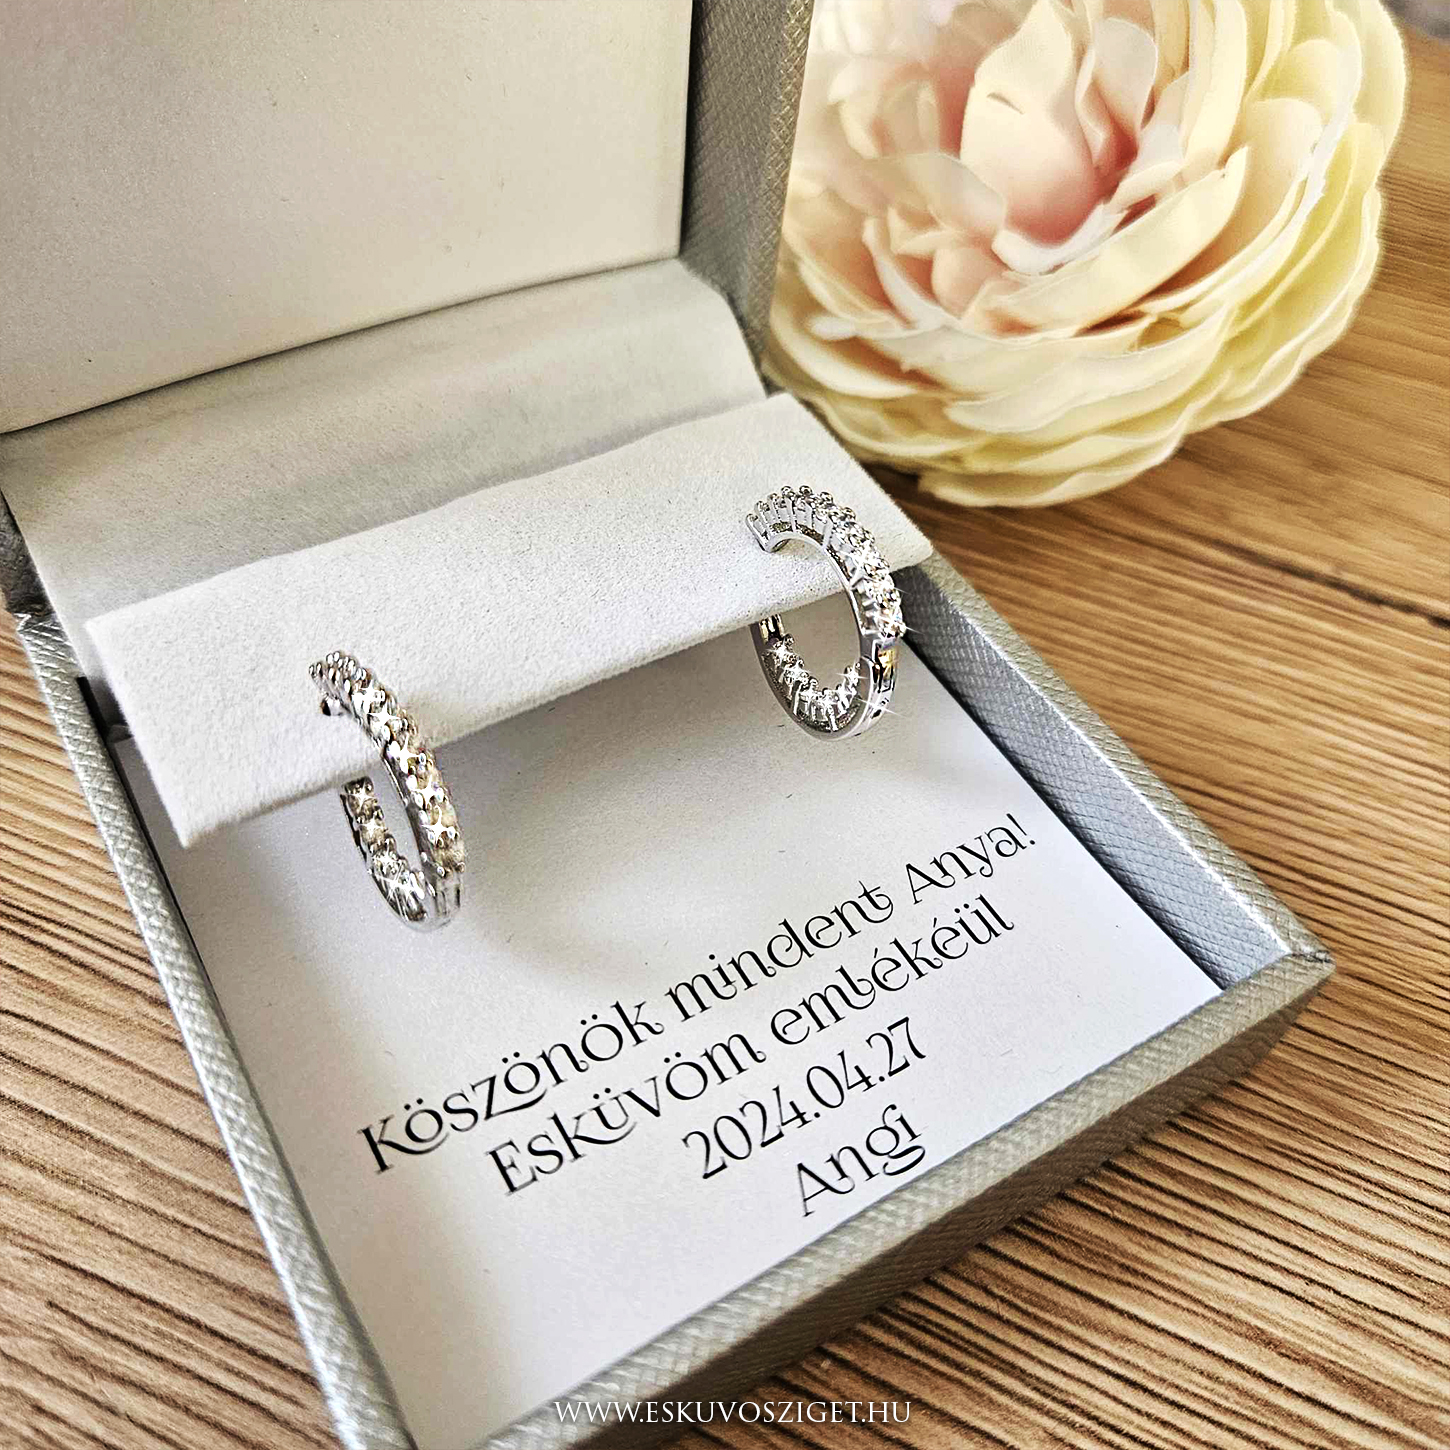 Örömanya szülőköszöntő női tanú és koszorúslány felkérő meghívó egyedi különleges ajándék ékszer esküvőre | ezüst cirkónia ékszer fülbevaló